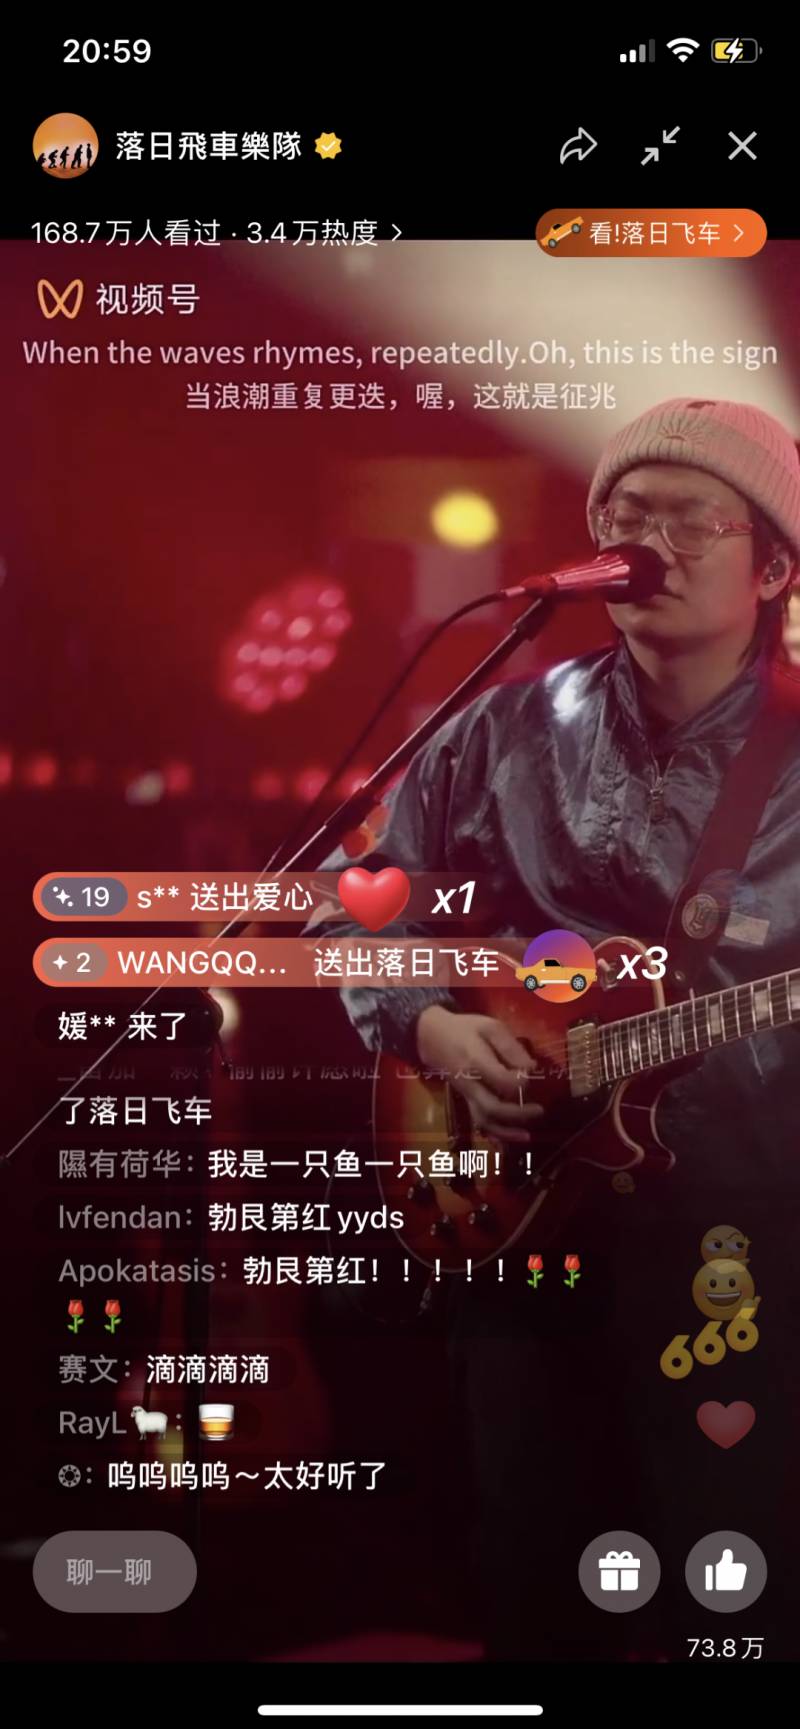 音悦Tai五月天饭团微博视频，专属音乐互动盛况